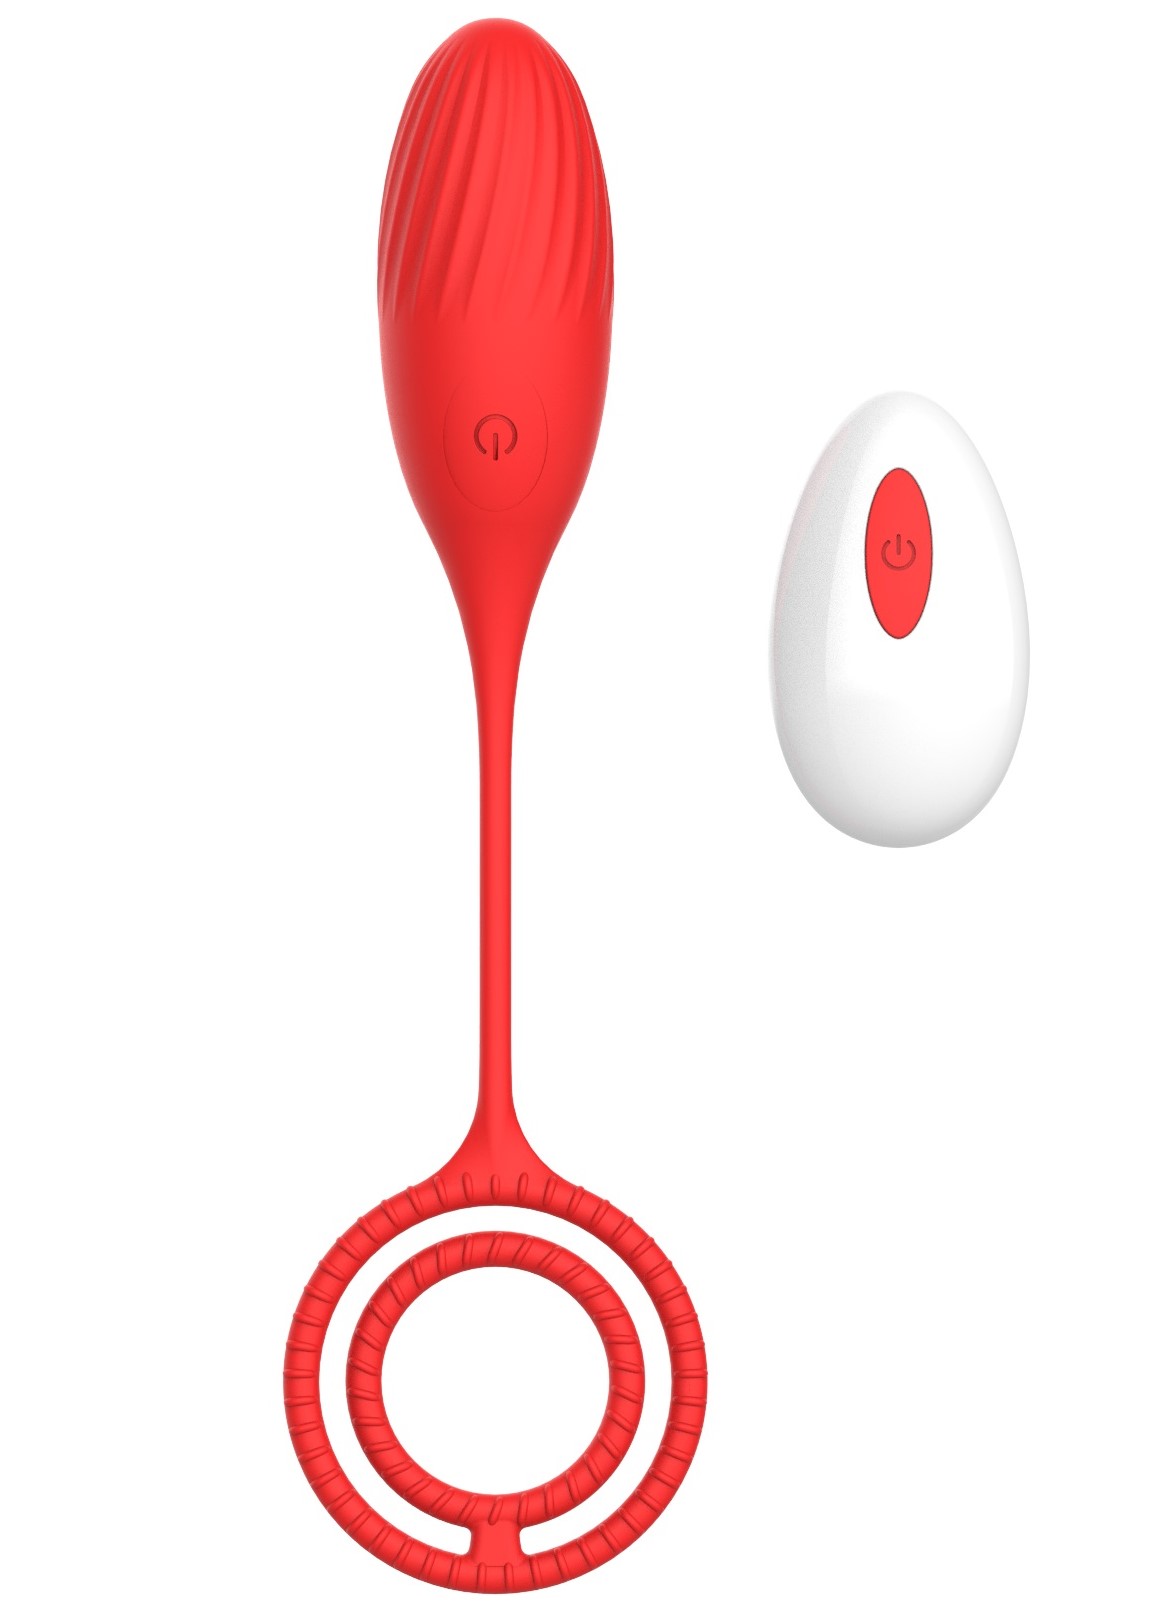 Ou Vibrator Elia Love Egg, 10 Moduri Vibratii, Remote Control, Silicon, USB, Rosu, 21.4 cm, Mokko Toys, Velvet Obsession